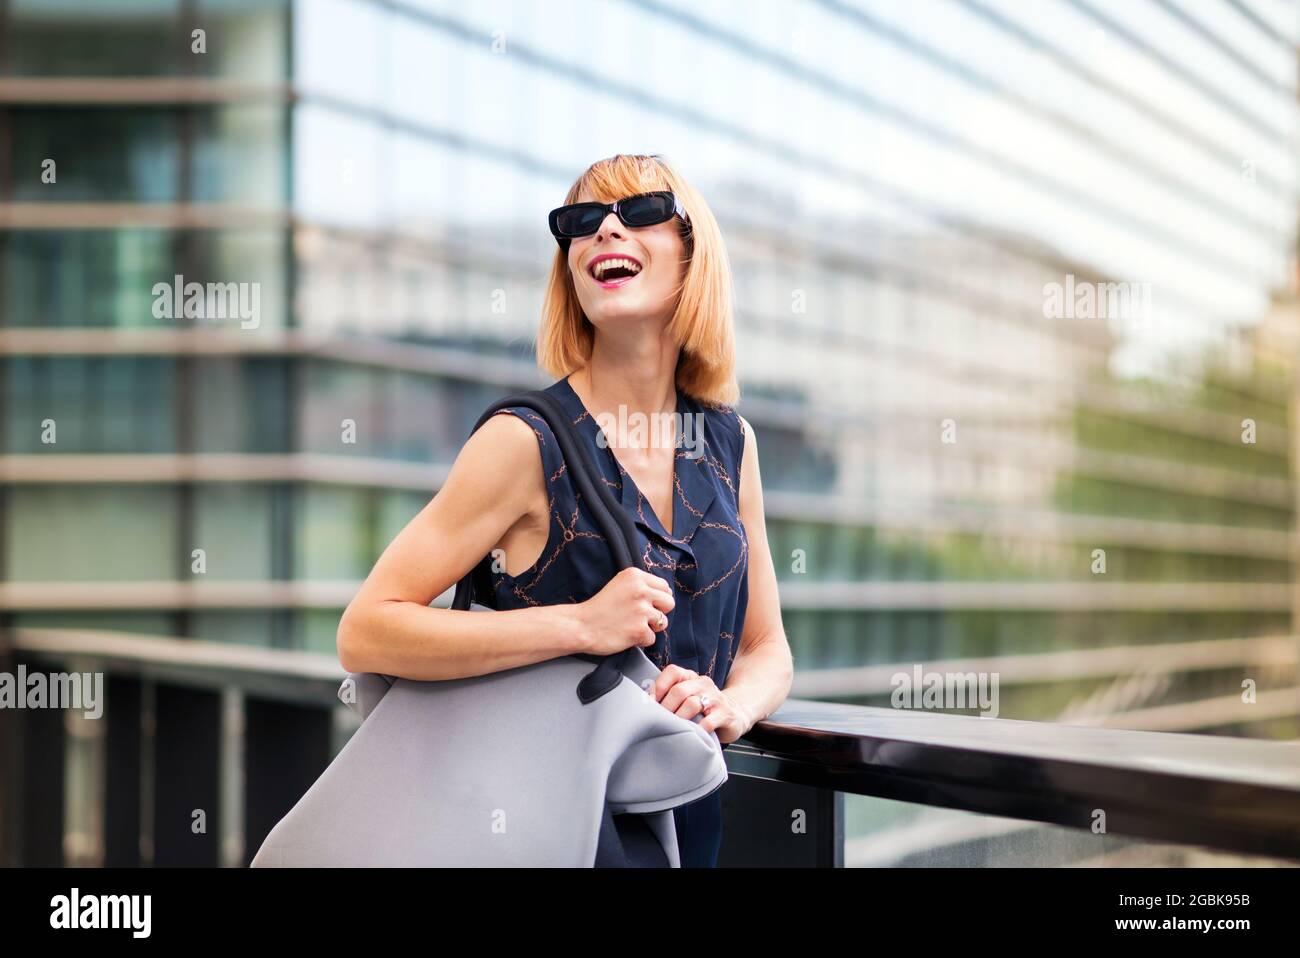 Vivace donna trendy in moderni occhiali da sole in piedi contro la ringhiera di un passaggio in una città ridendo felice mentre guarda verso il cielo con vetro Foto Stock